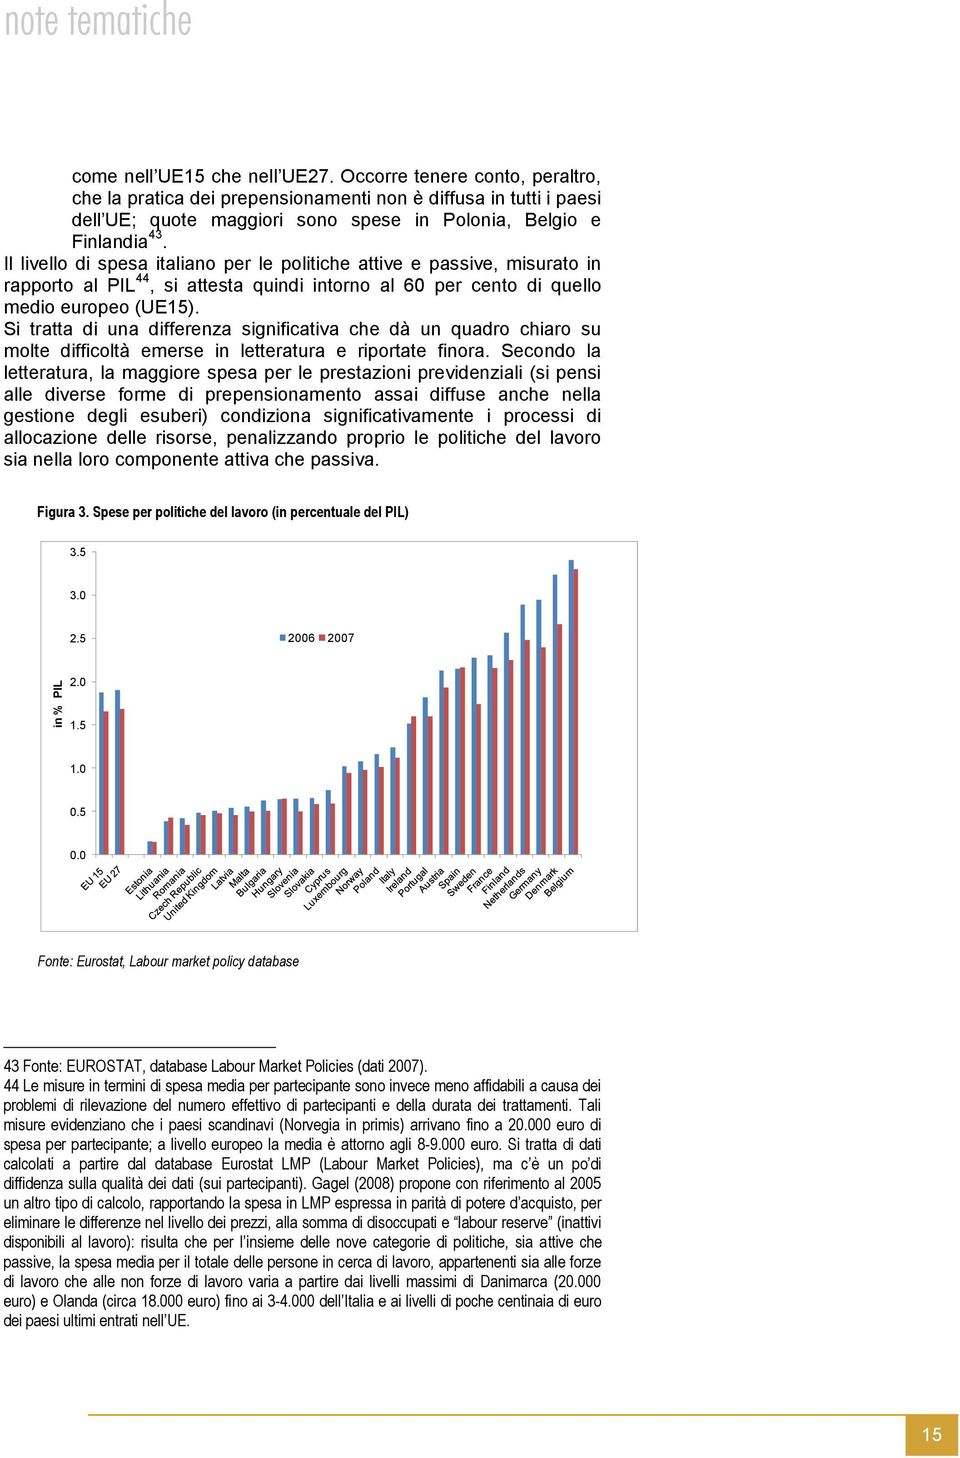 Il livello di spesa italiano per le politiche attive e passive, misurato in rapporto al PIL 44, si attesta quindi intorno al 60 per cento di quello medio europeo (UE15).